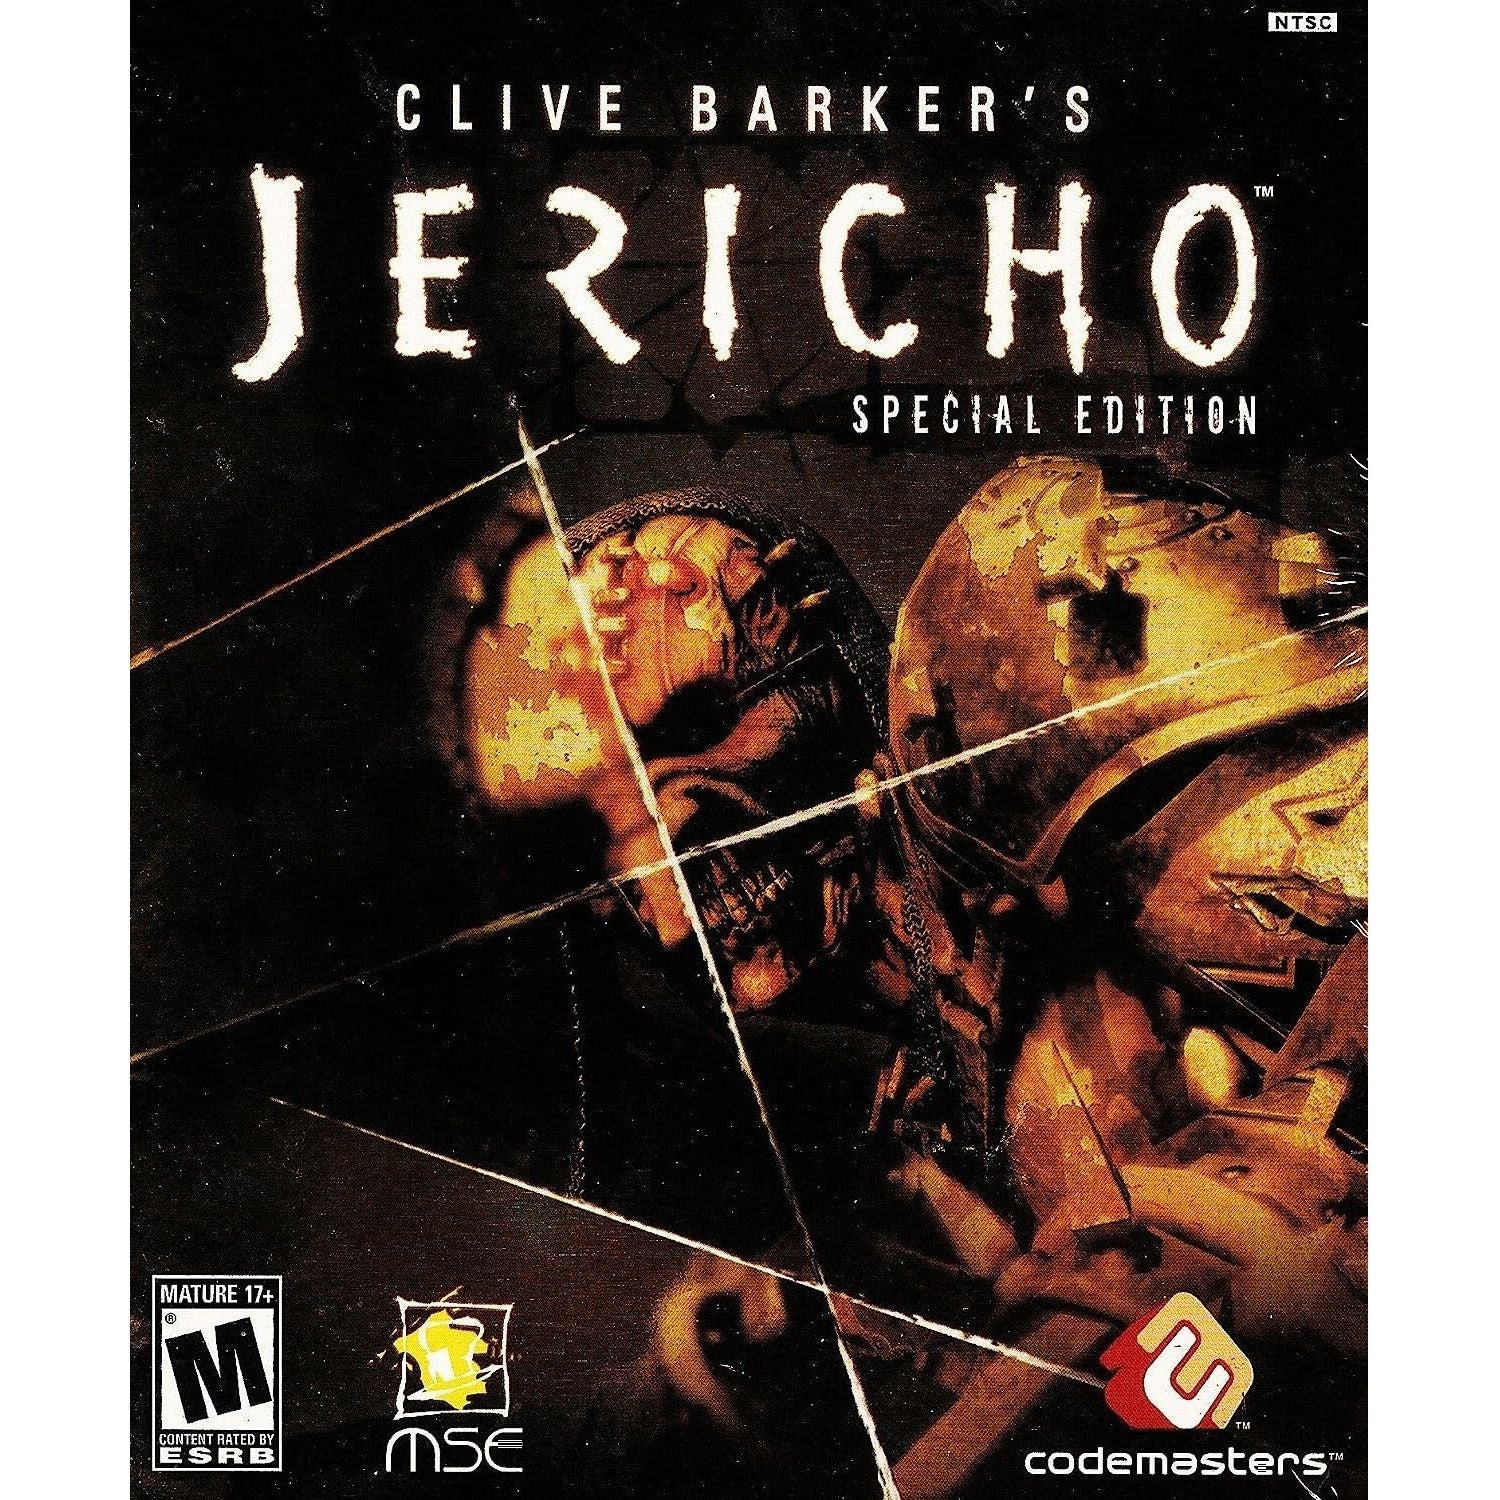 XBOX 360 - Édition spéciale Jericho de Clive Barker